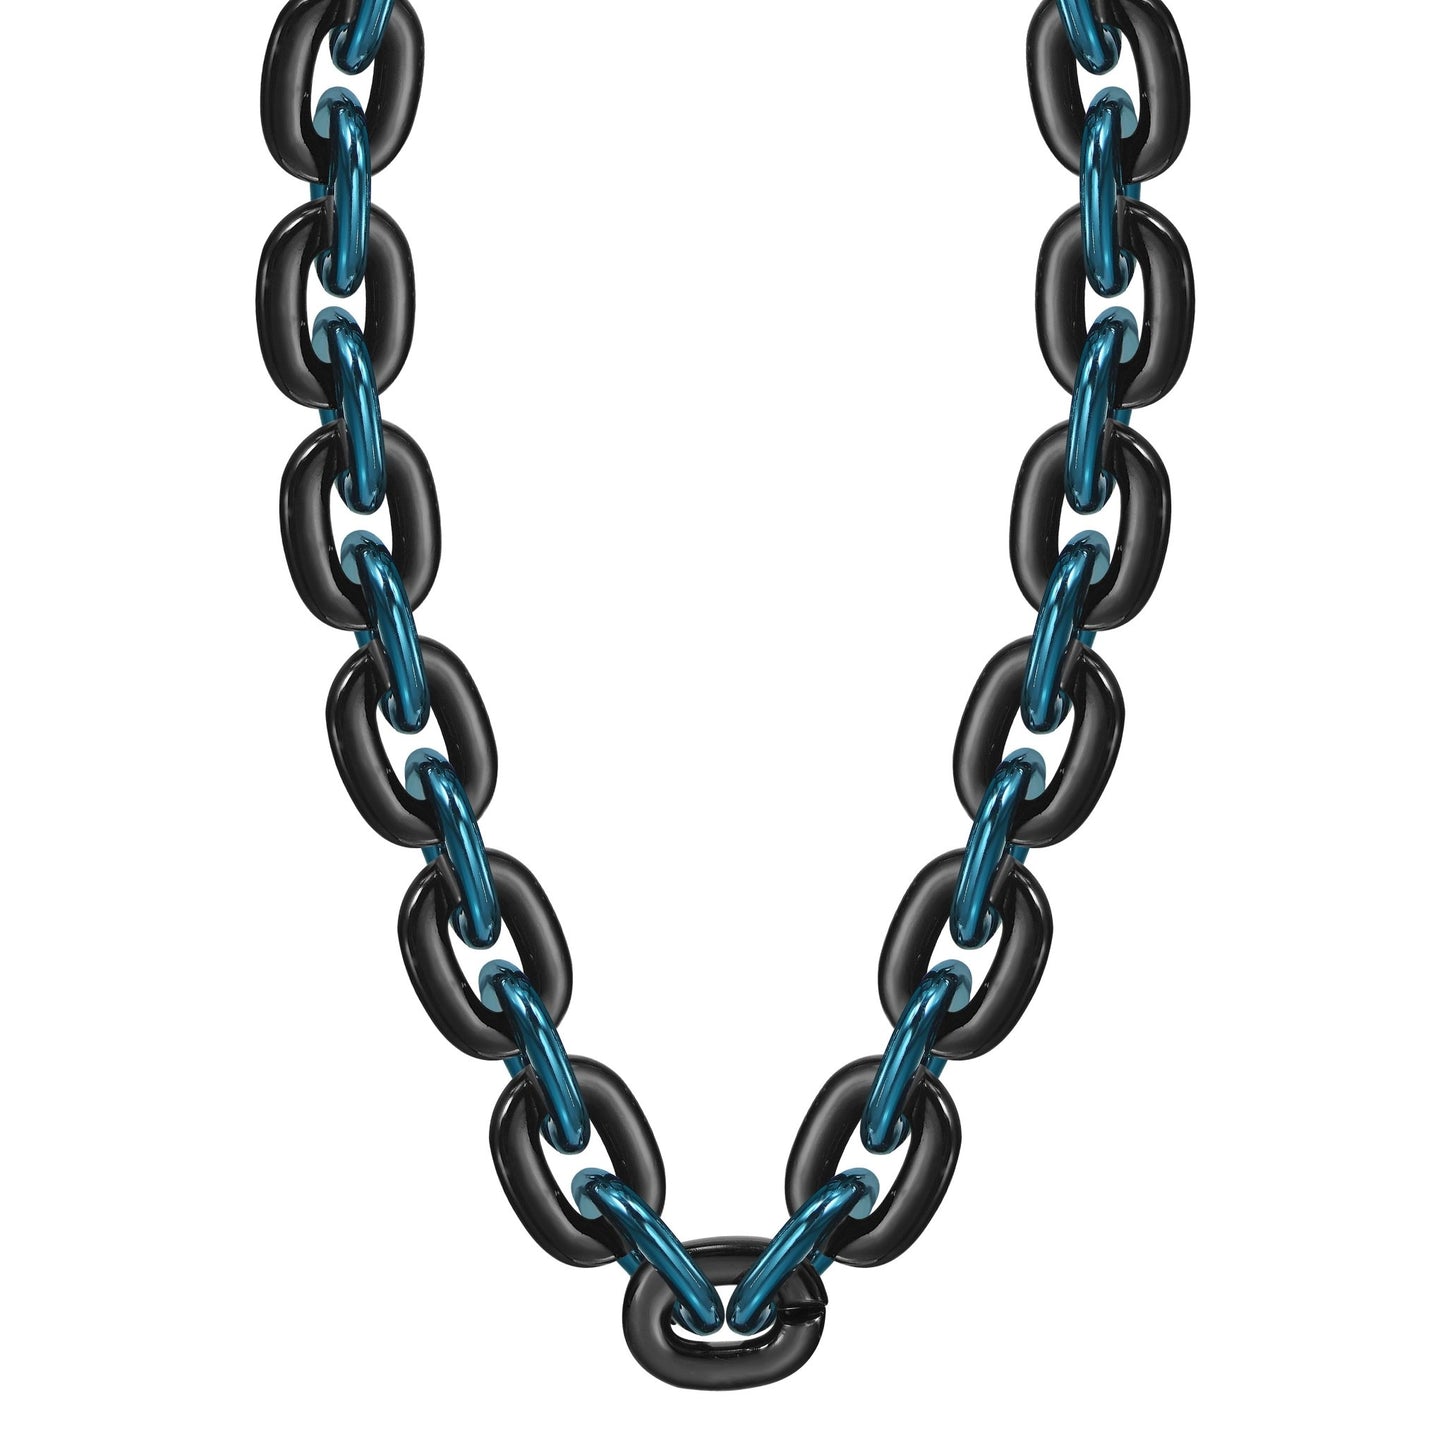 Jumbo Fan Chain Necklace - Gamedays Gear - Black / Navy